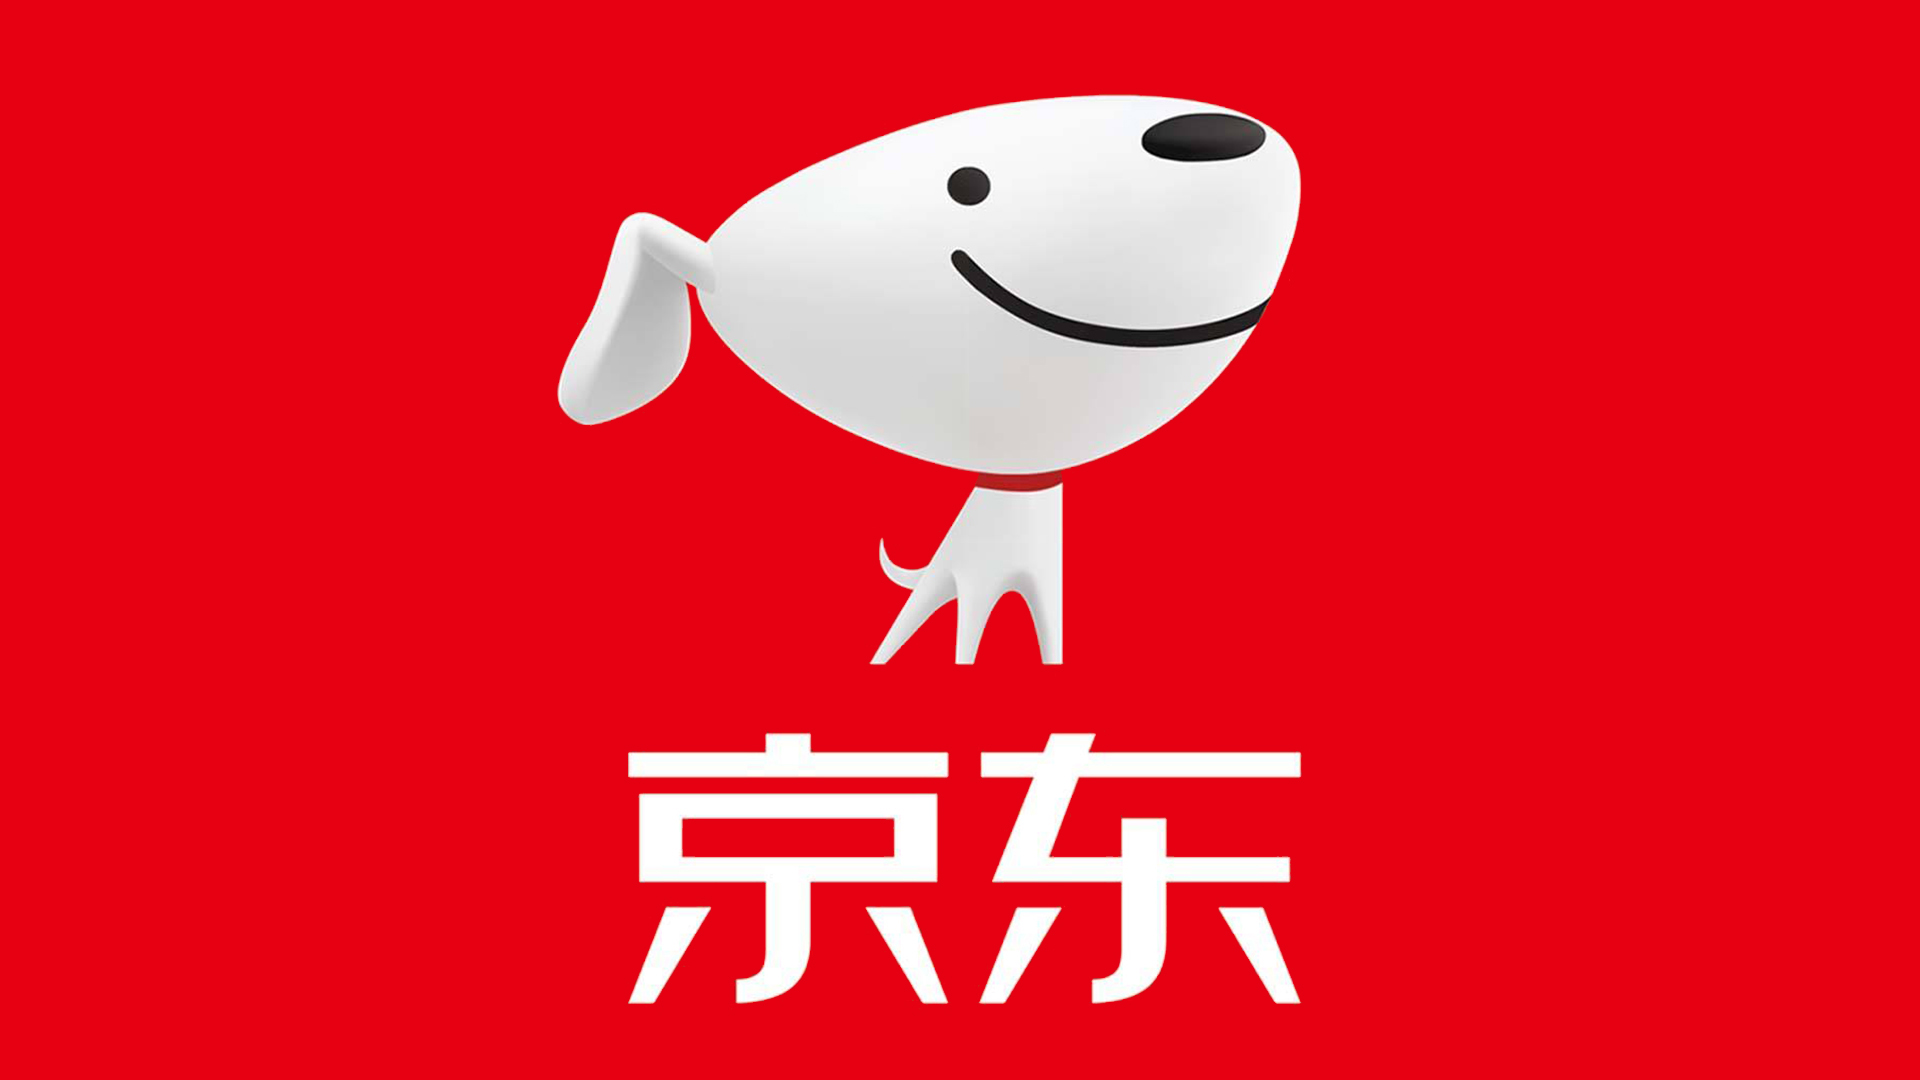 京东logo高清大图壁纸图片